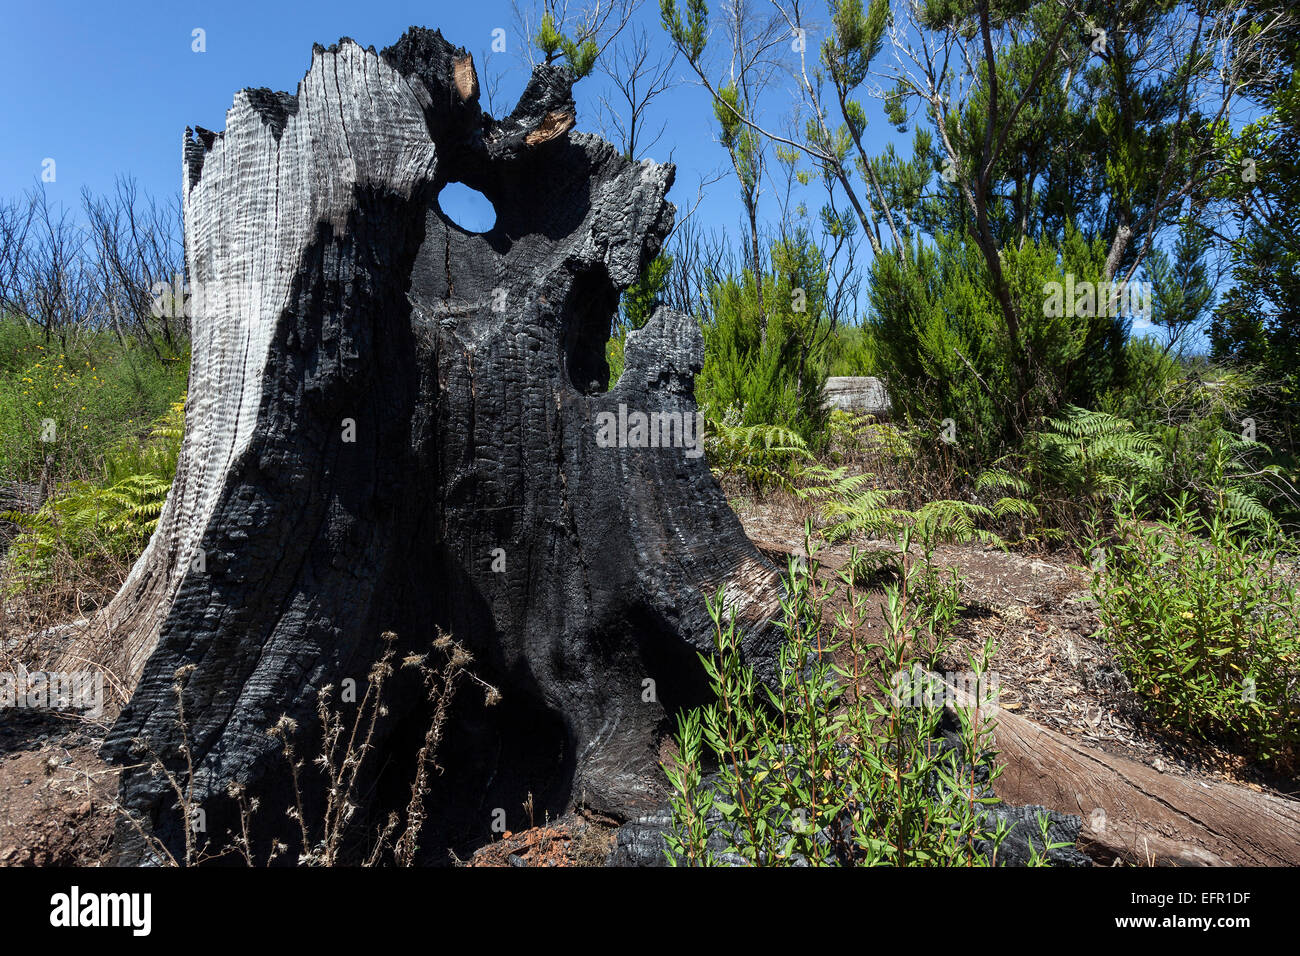 Tronc d'arbre calciné dans la végétation verte, les traces du feu de forêt de 2012, ci-dessous le Garajonay, La Gomera, Canary Islands, Spain Banque D'Images